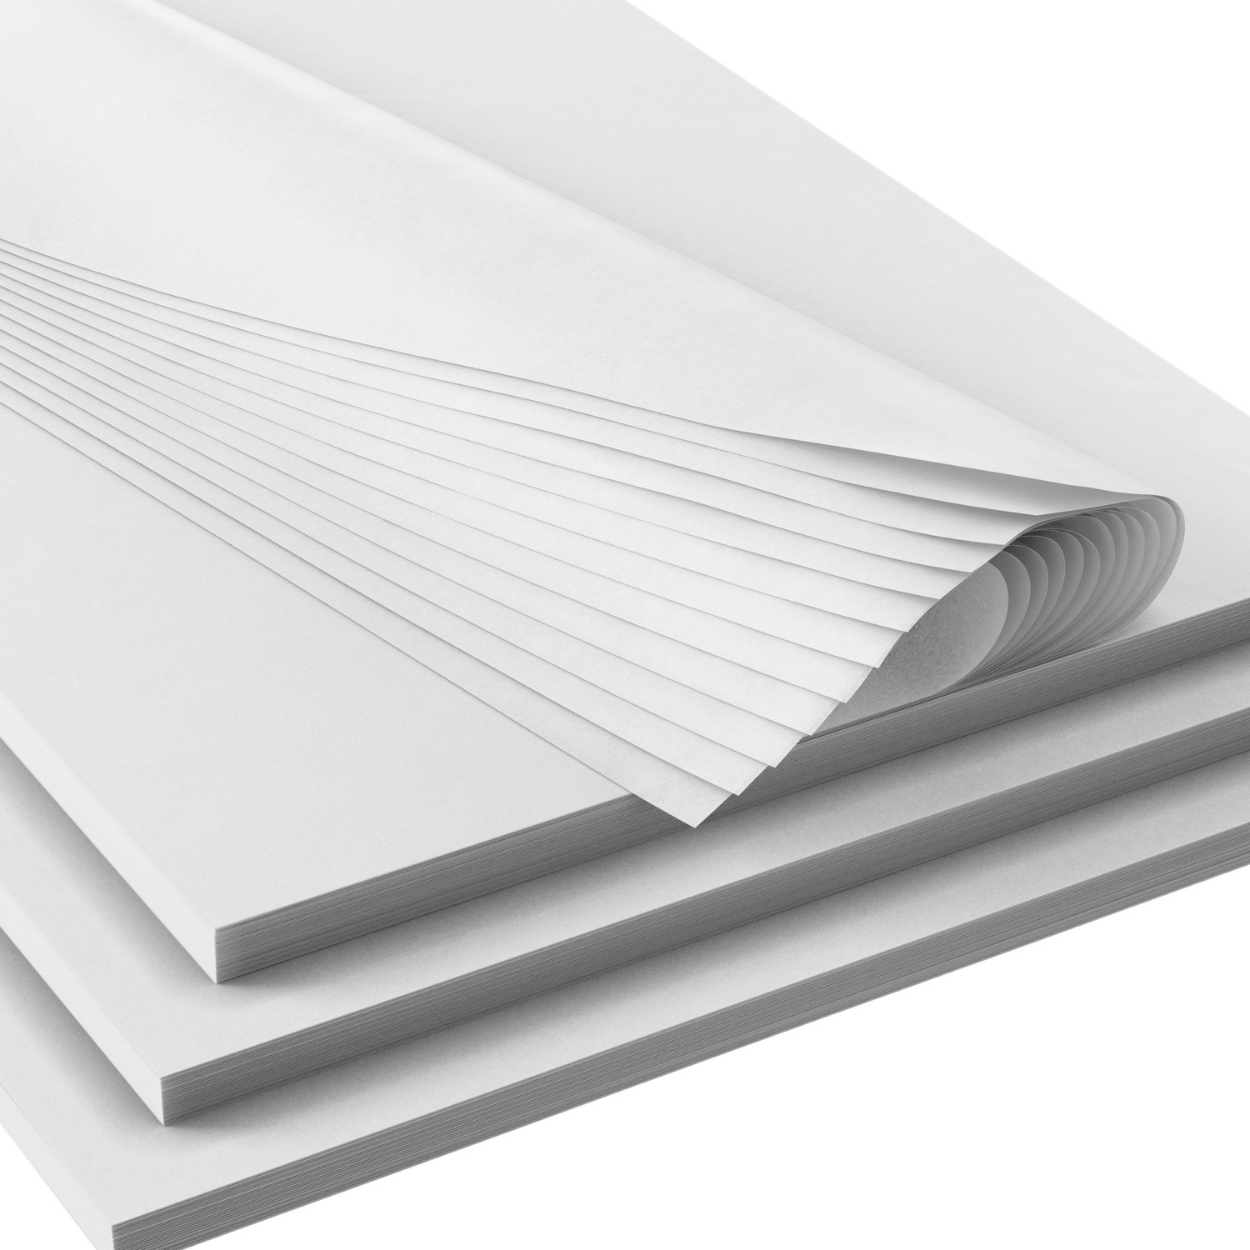 Timeless Floral Gray Tissue Paper, 20x30, Bulk 240 Sheet Pack